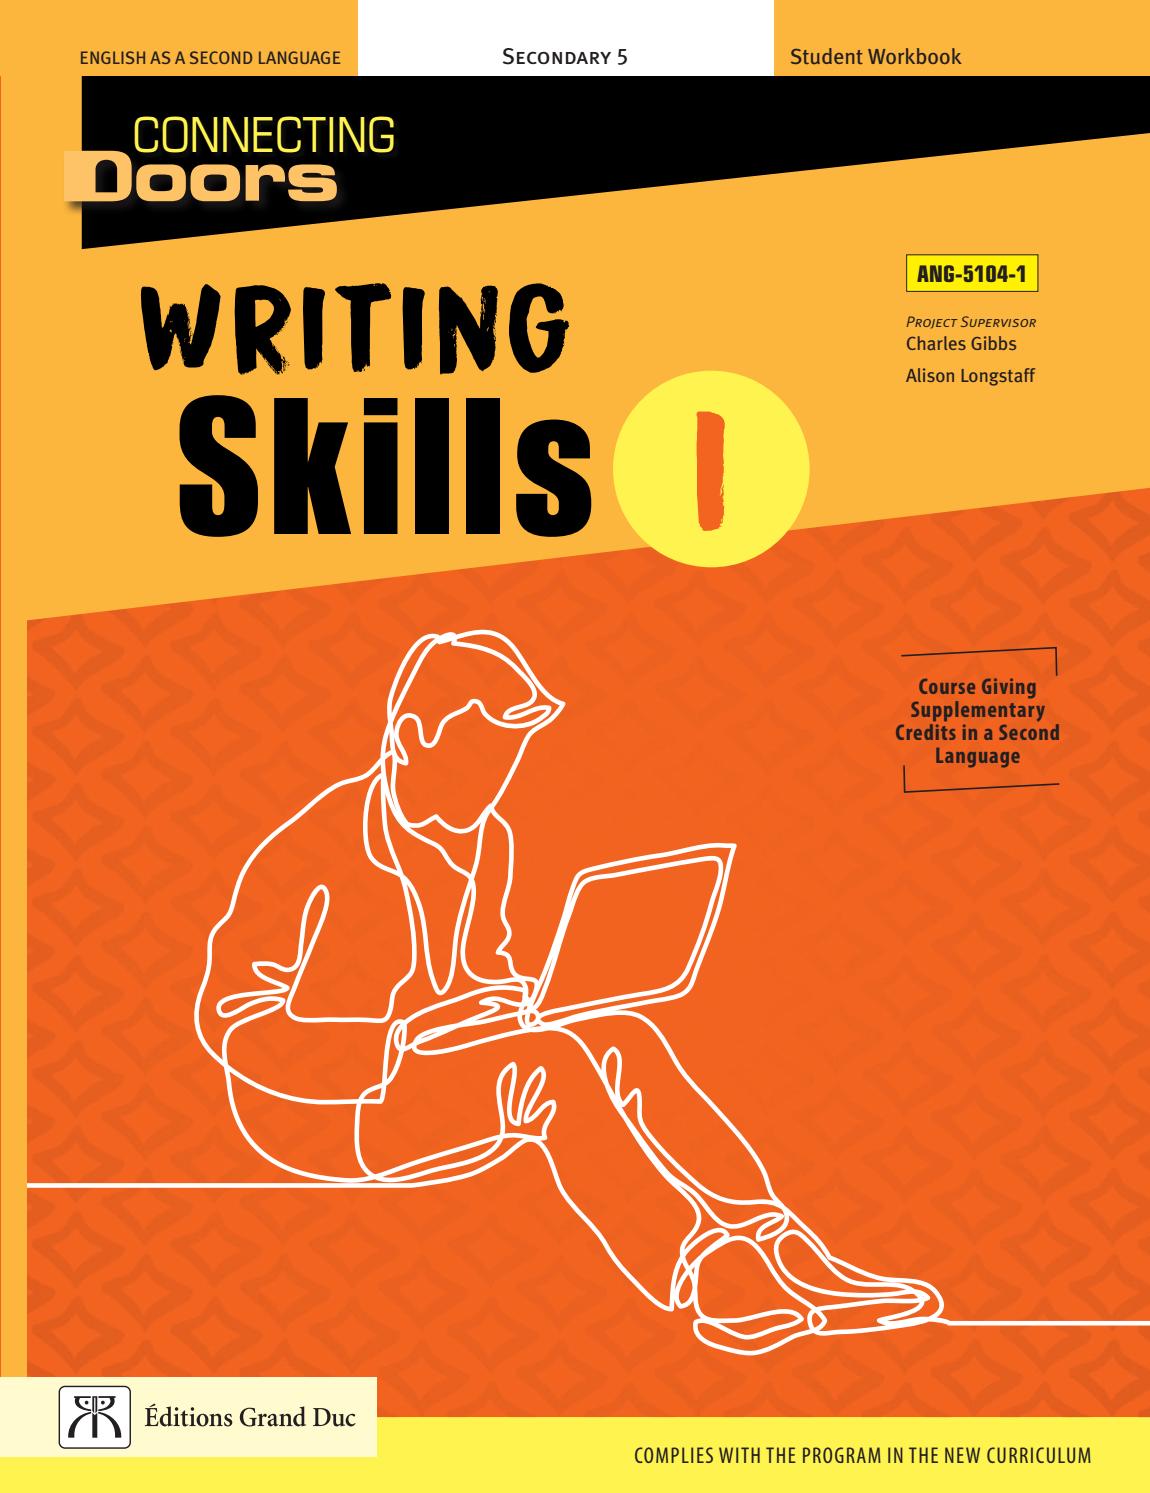 ANG-5104-1 Writing Skills I